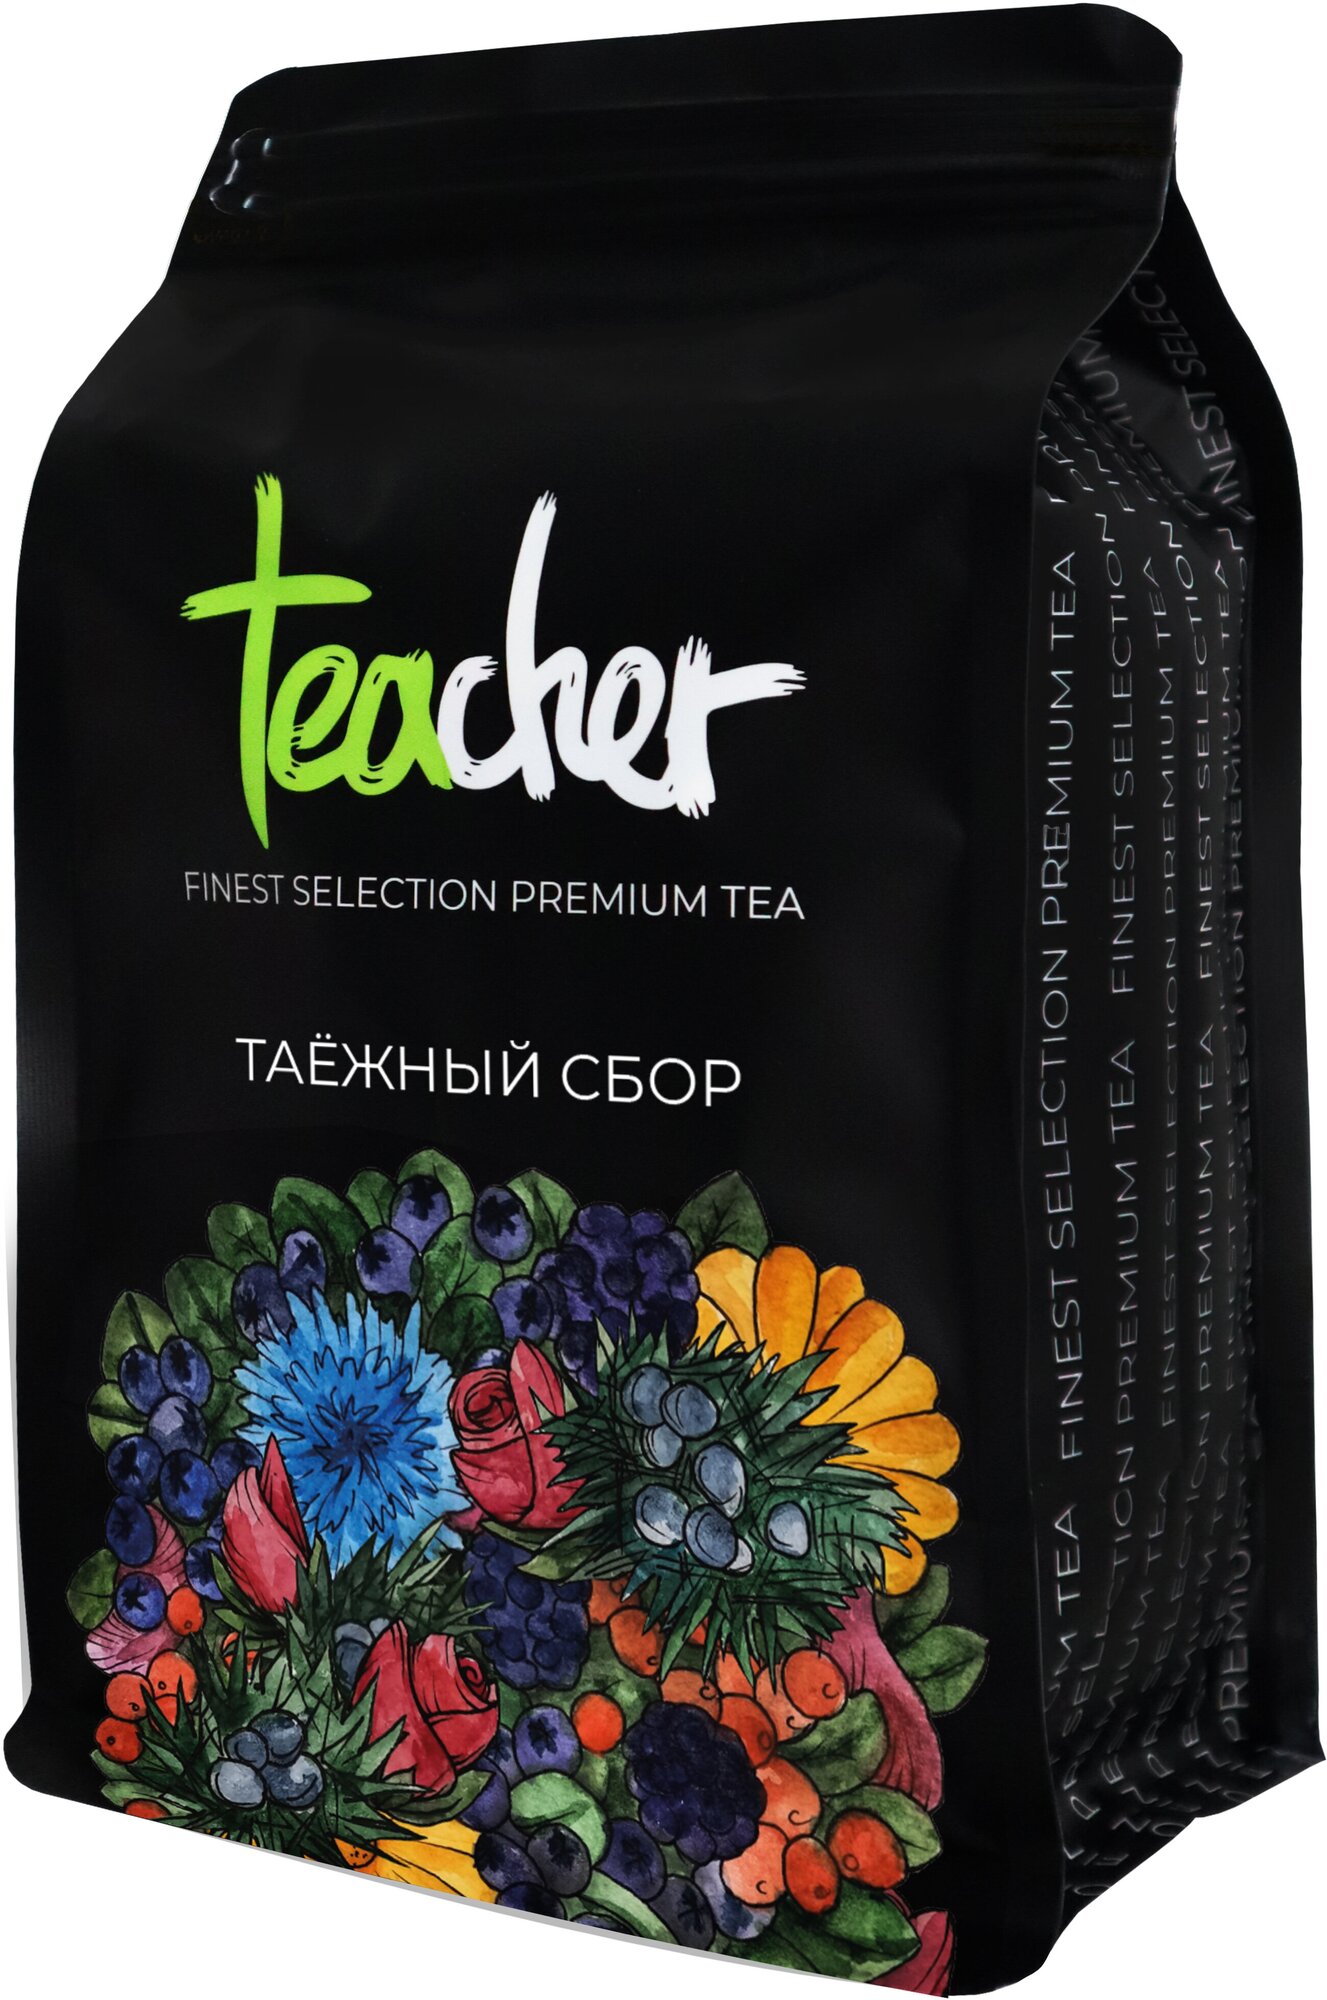 Чай TEACHER Таежный Сбор 500 г черный листовой ягодный травяной фруктовый премиум рассыпной весовой - фотография № 4